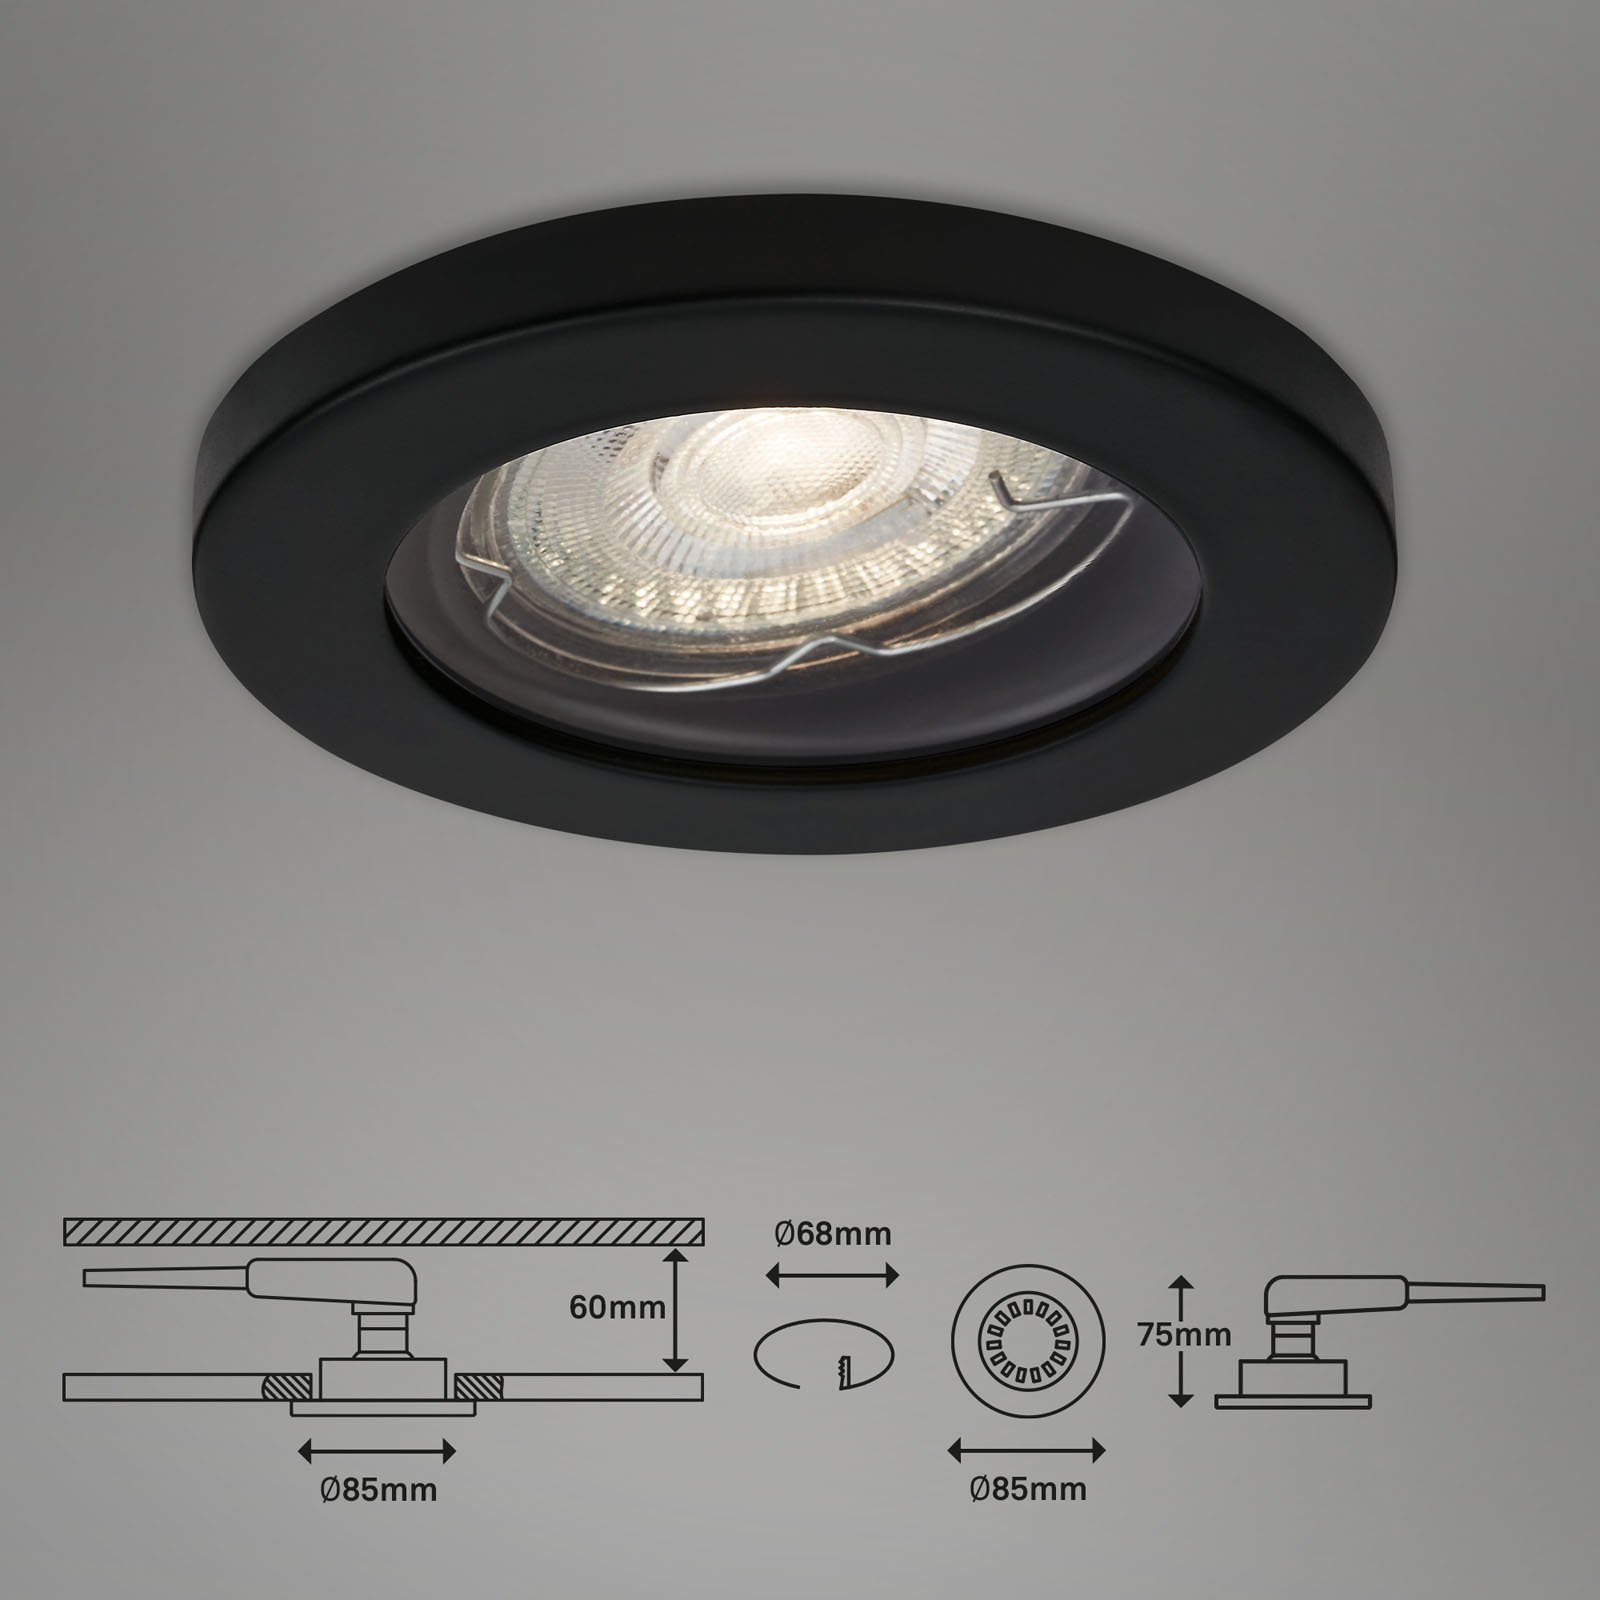 LED GU10, Warmweiß, Leuchten Einbaustrahler, Briloner Einbauleuchte wechselbar, 7181-035, matt-schwarz, Einbauspot LED